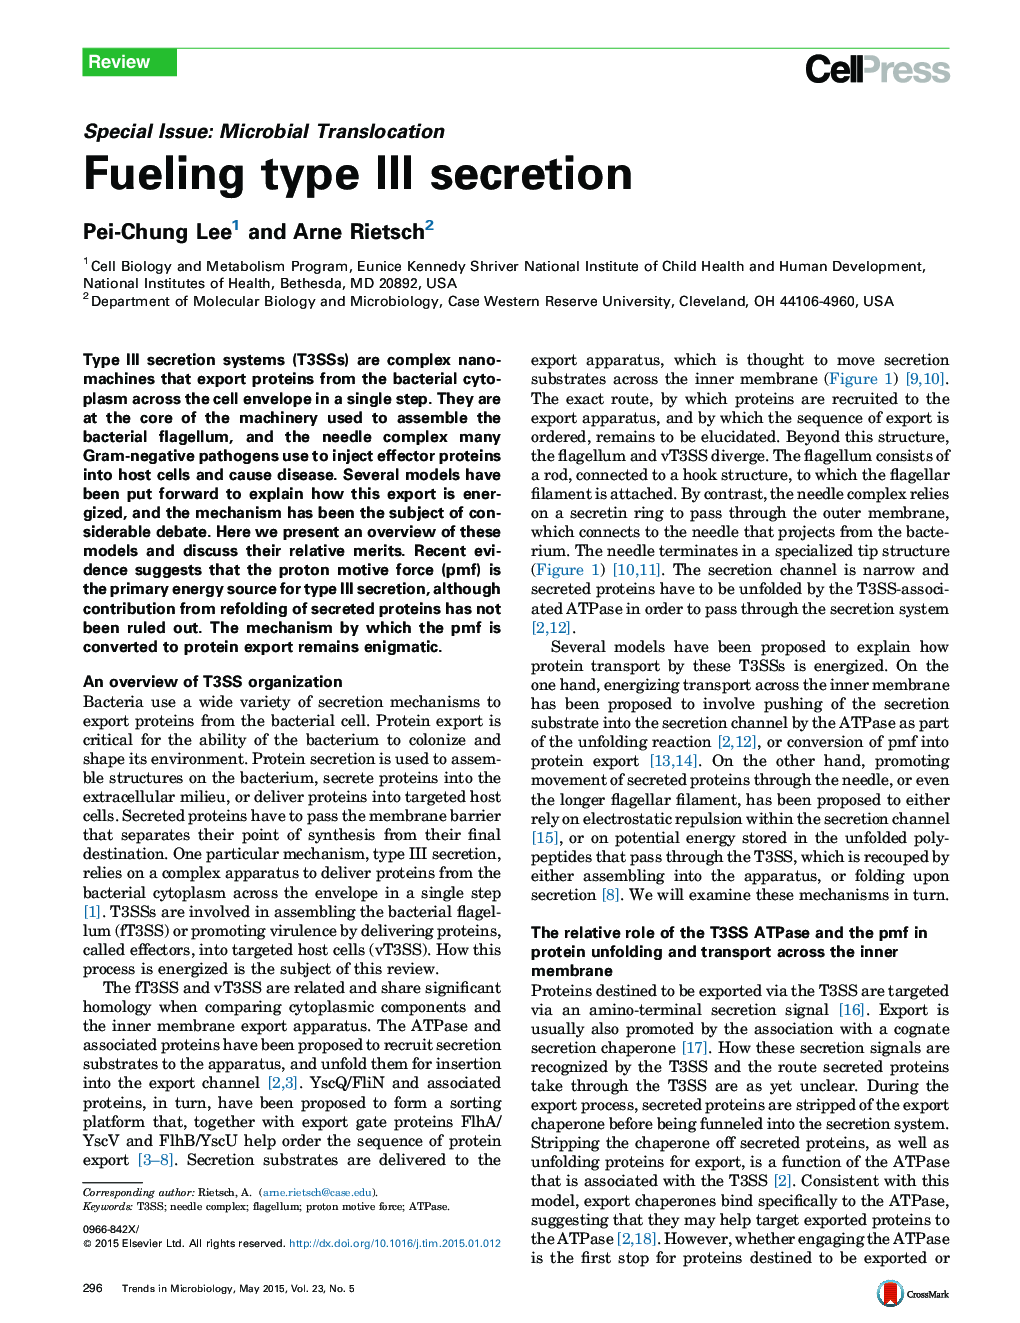 Fueling type III secretion